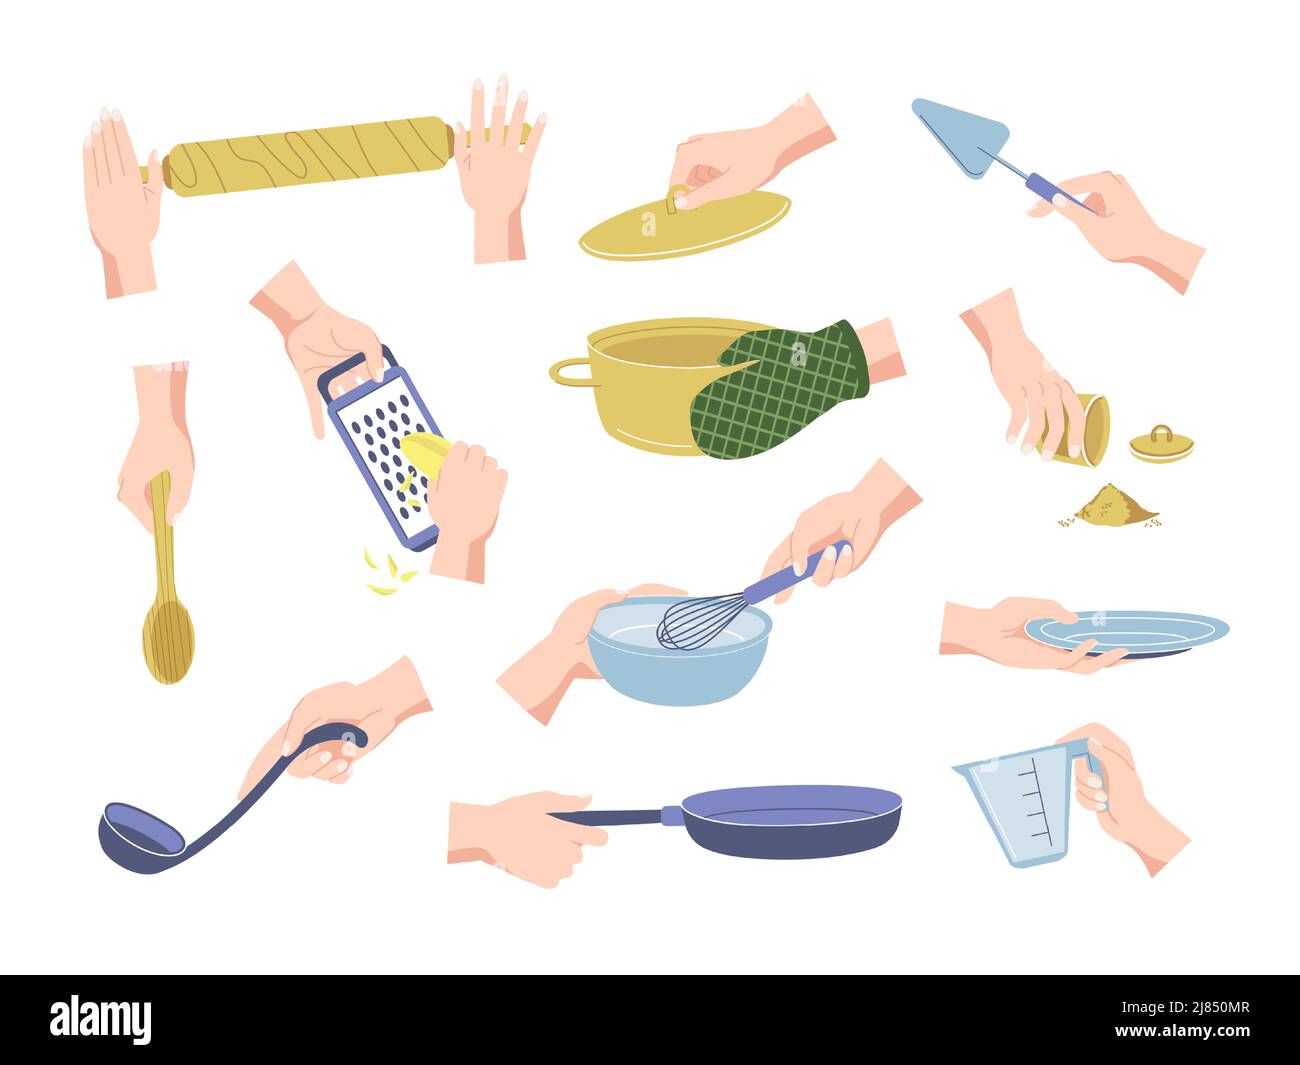 Gargaren von Speisen mit Armen. Vorbereitung mit weiblichen Händen halten Küchenzubehör und Utensilien. Vector Geschirr und Küchengeräte Set Stock Vektor